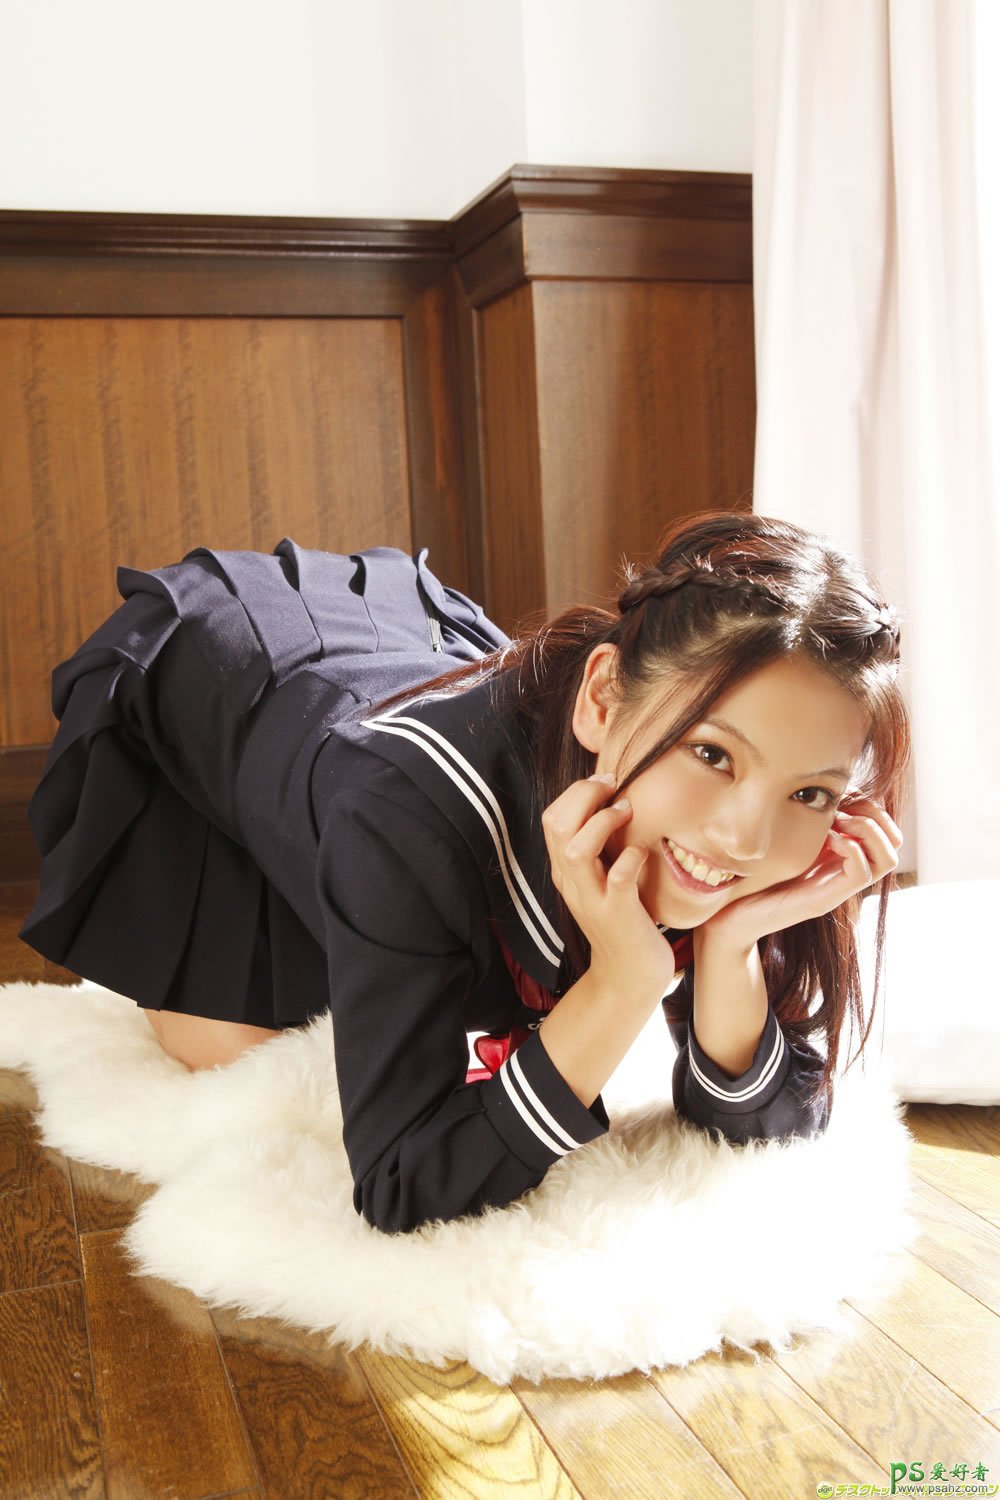 可爱的日本萝莉学生制服性感写真，漂亮学生妹妹丰满翘臀美腿迷人